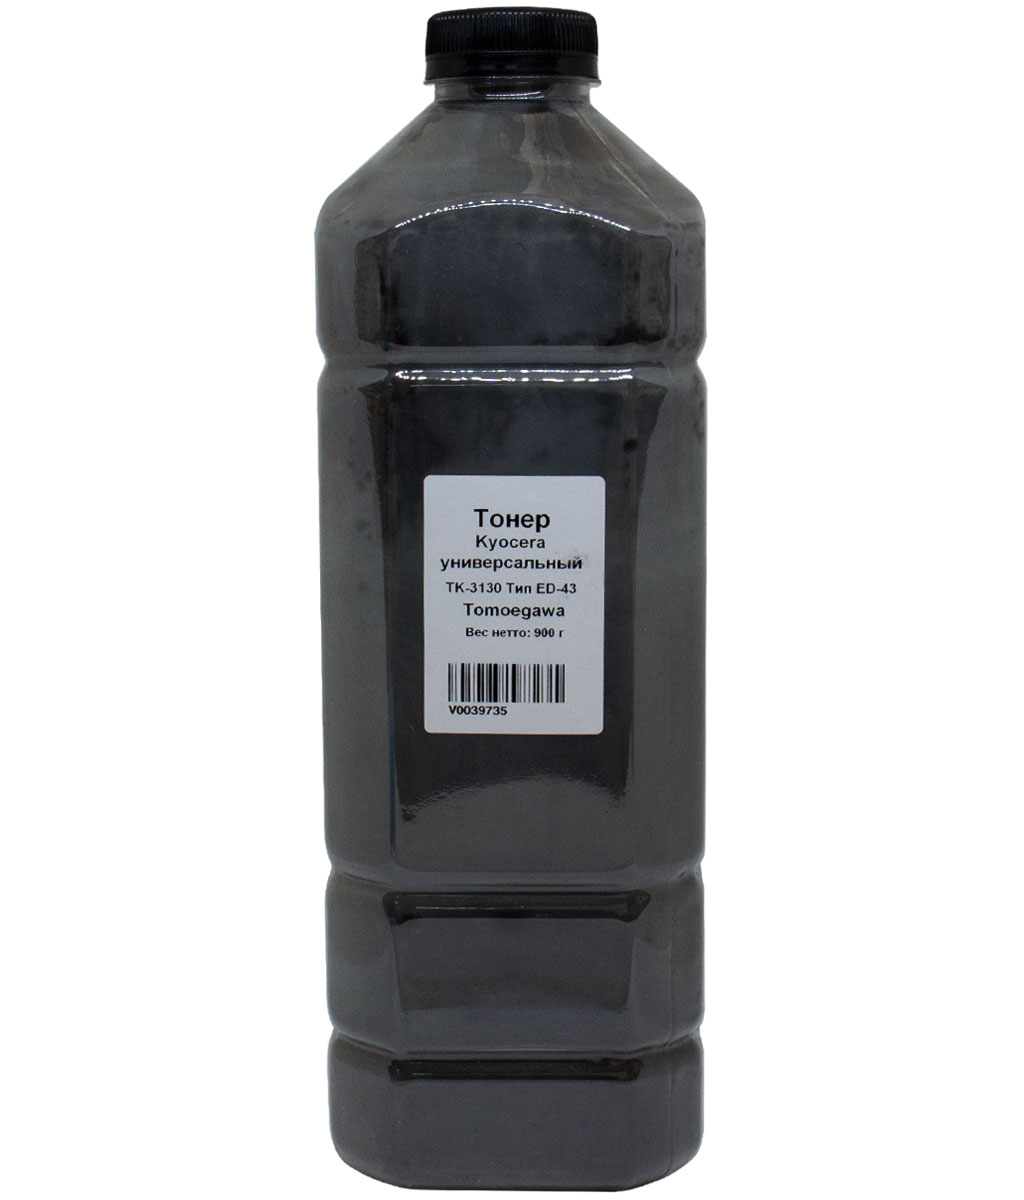 Тонер Tomoegawa Тип ED-43, бутыль 900 г, черный, совместимый для Kyocera универсальный